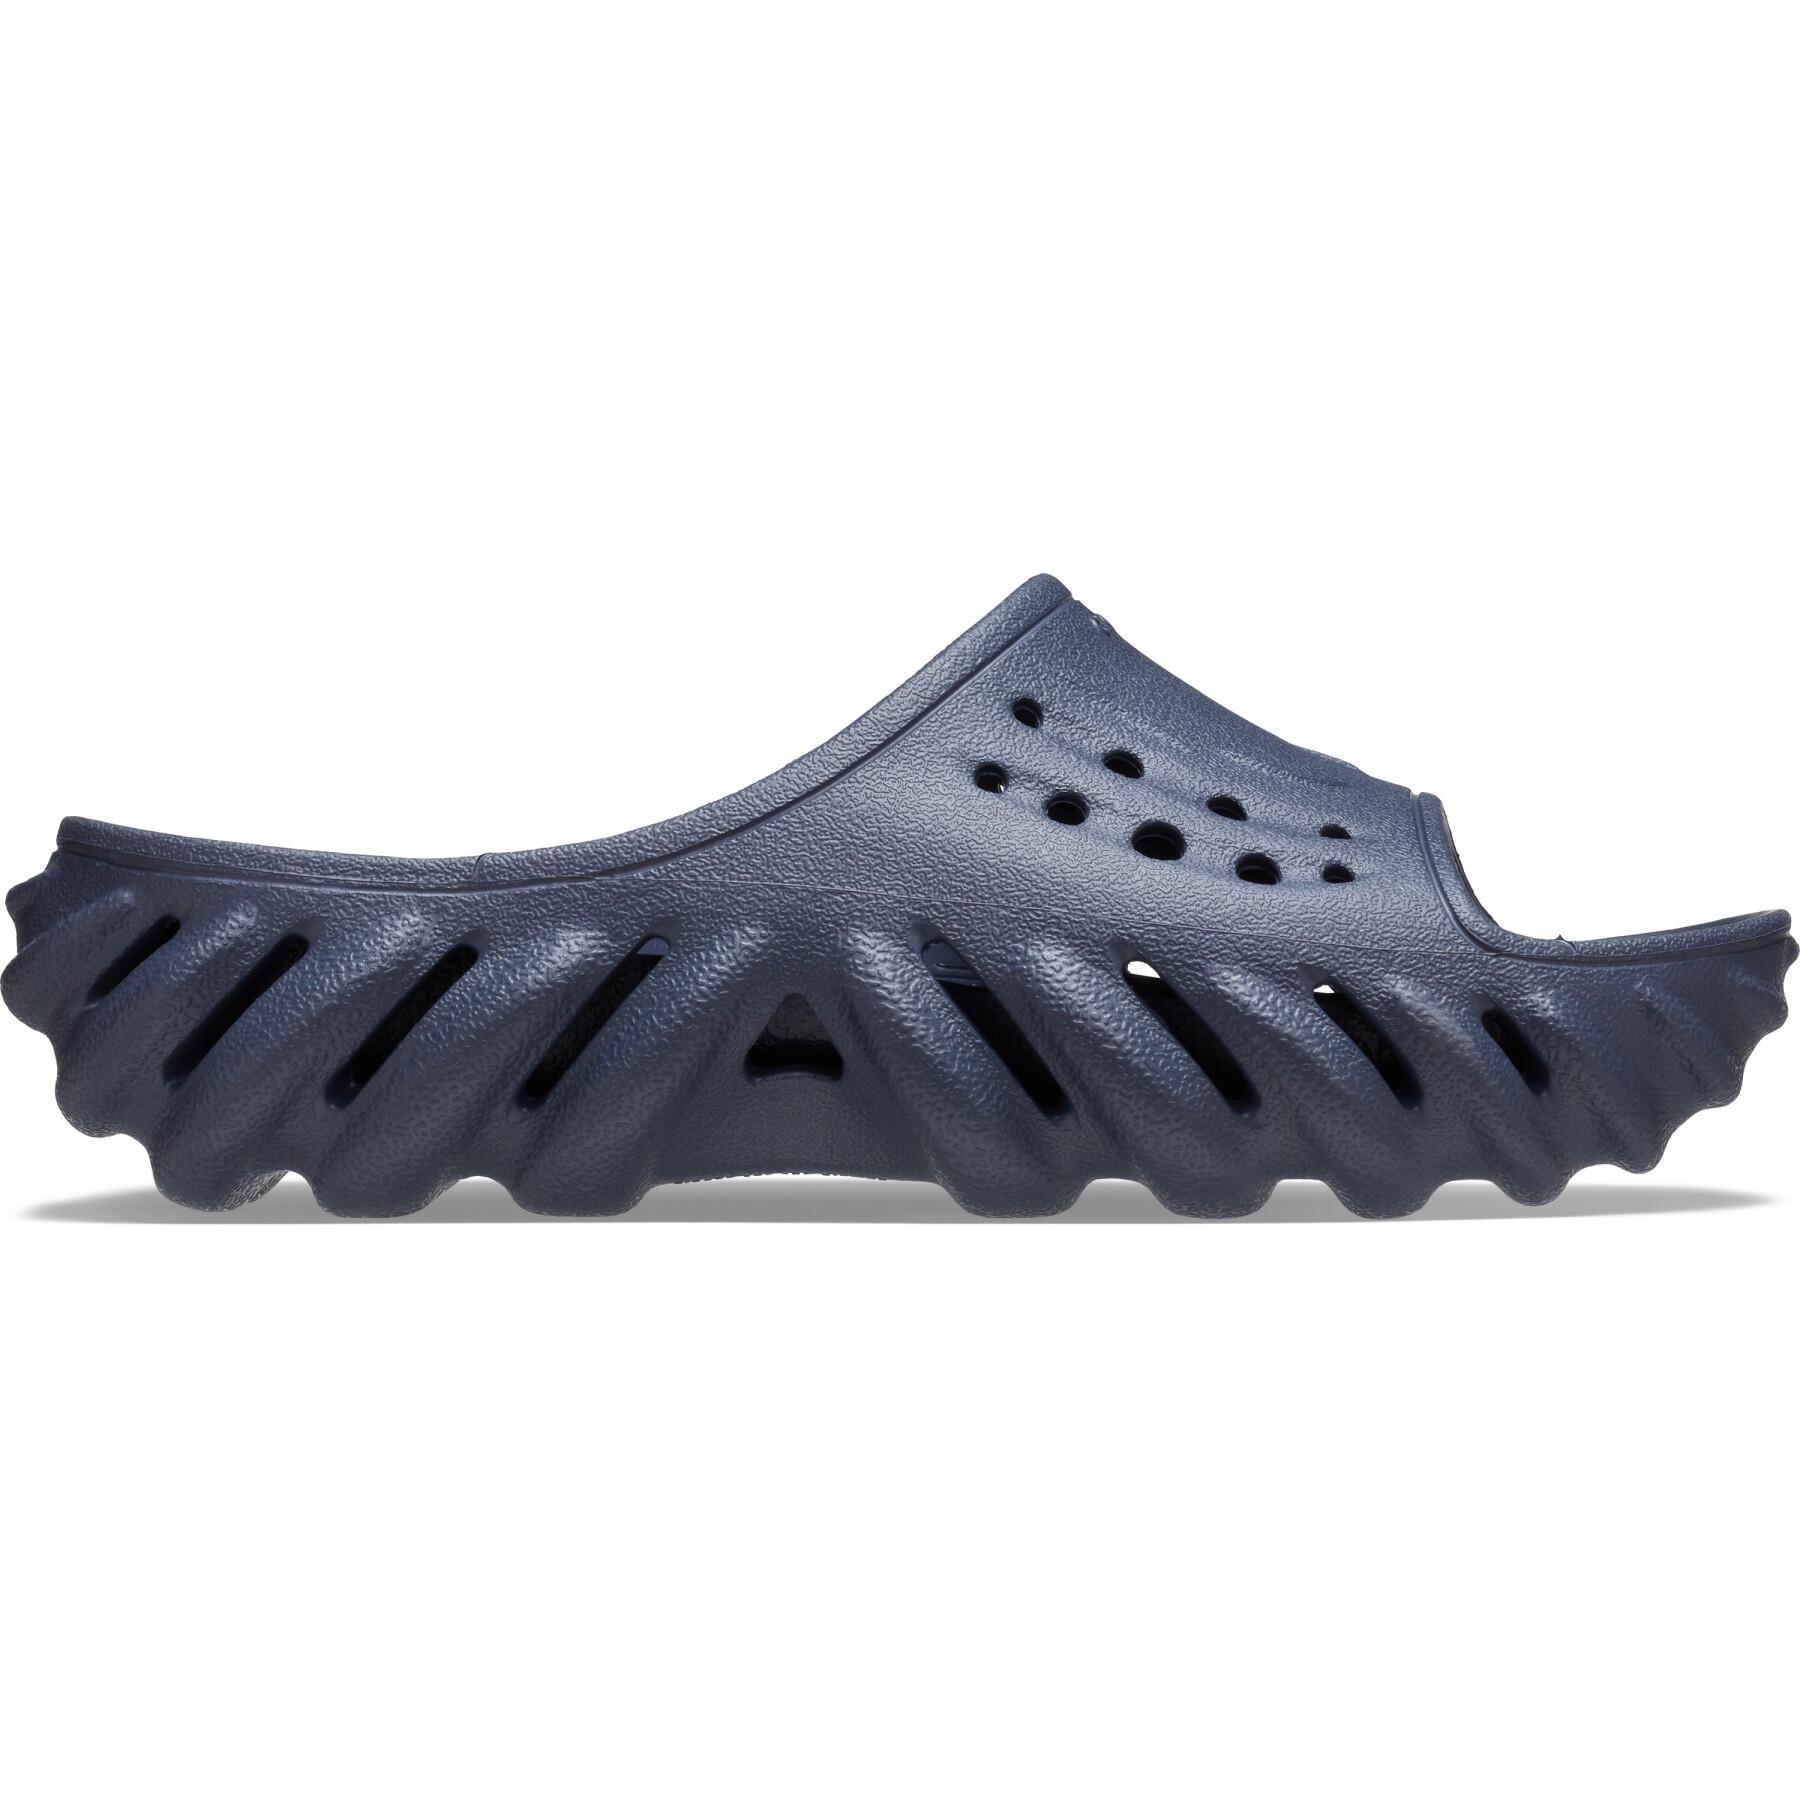 Children's flip-flops Crocs Echo